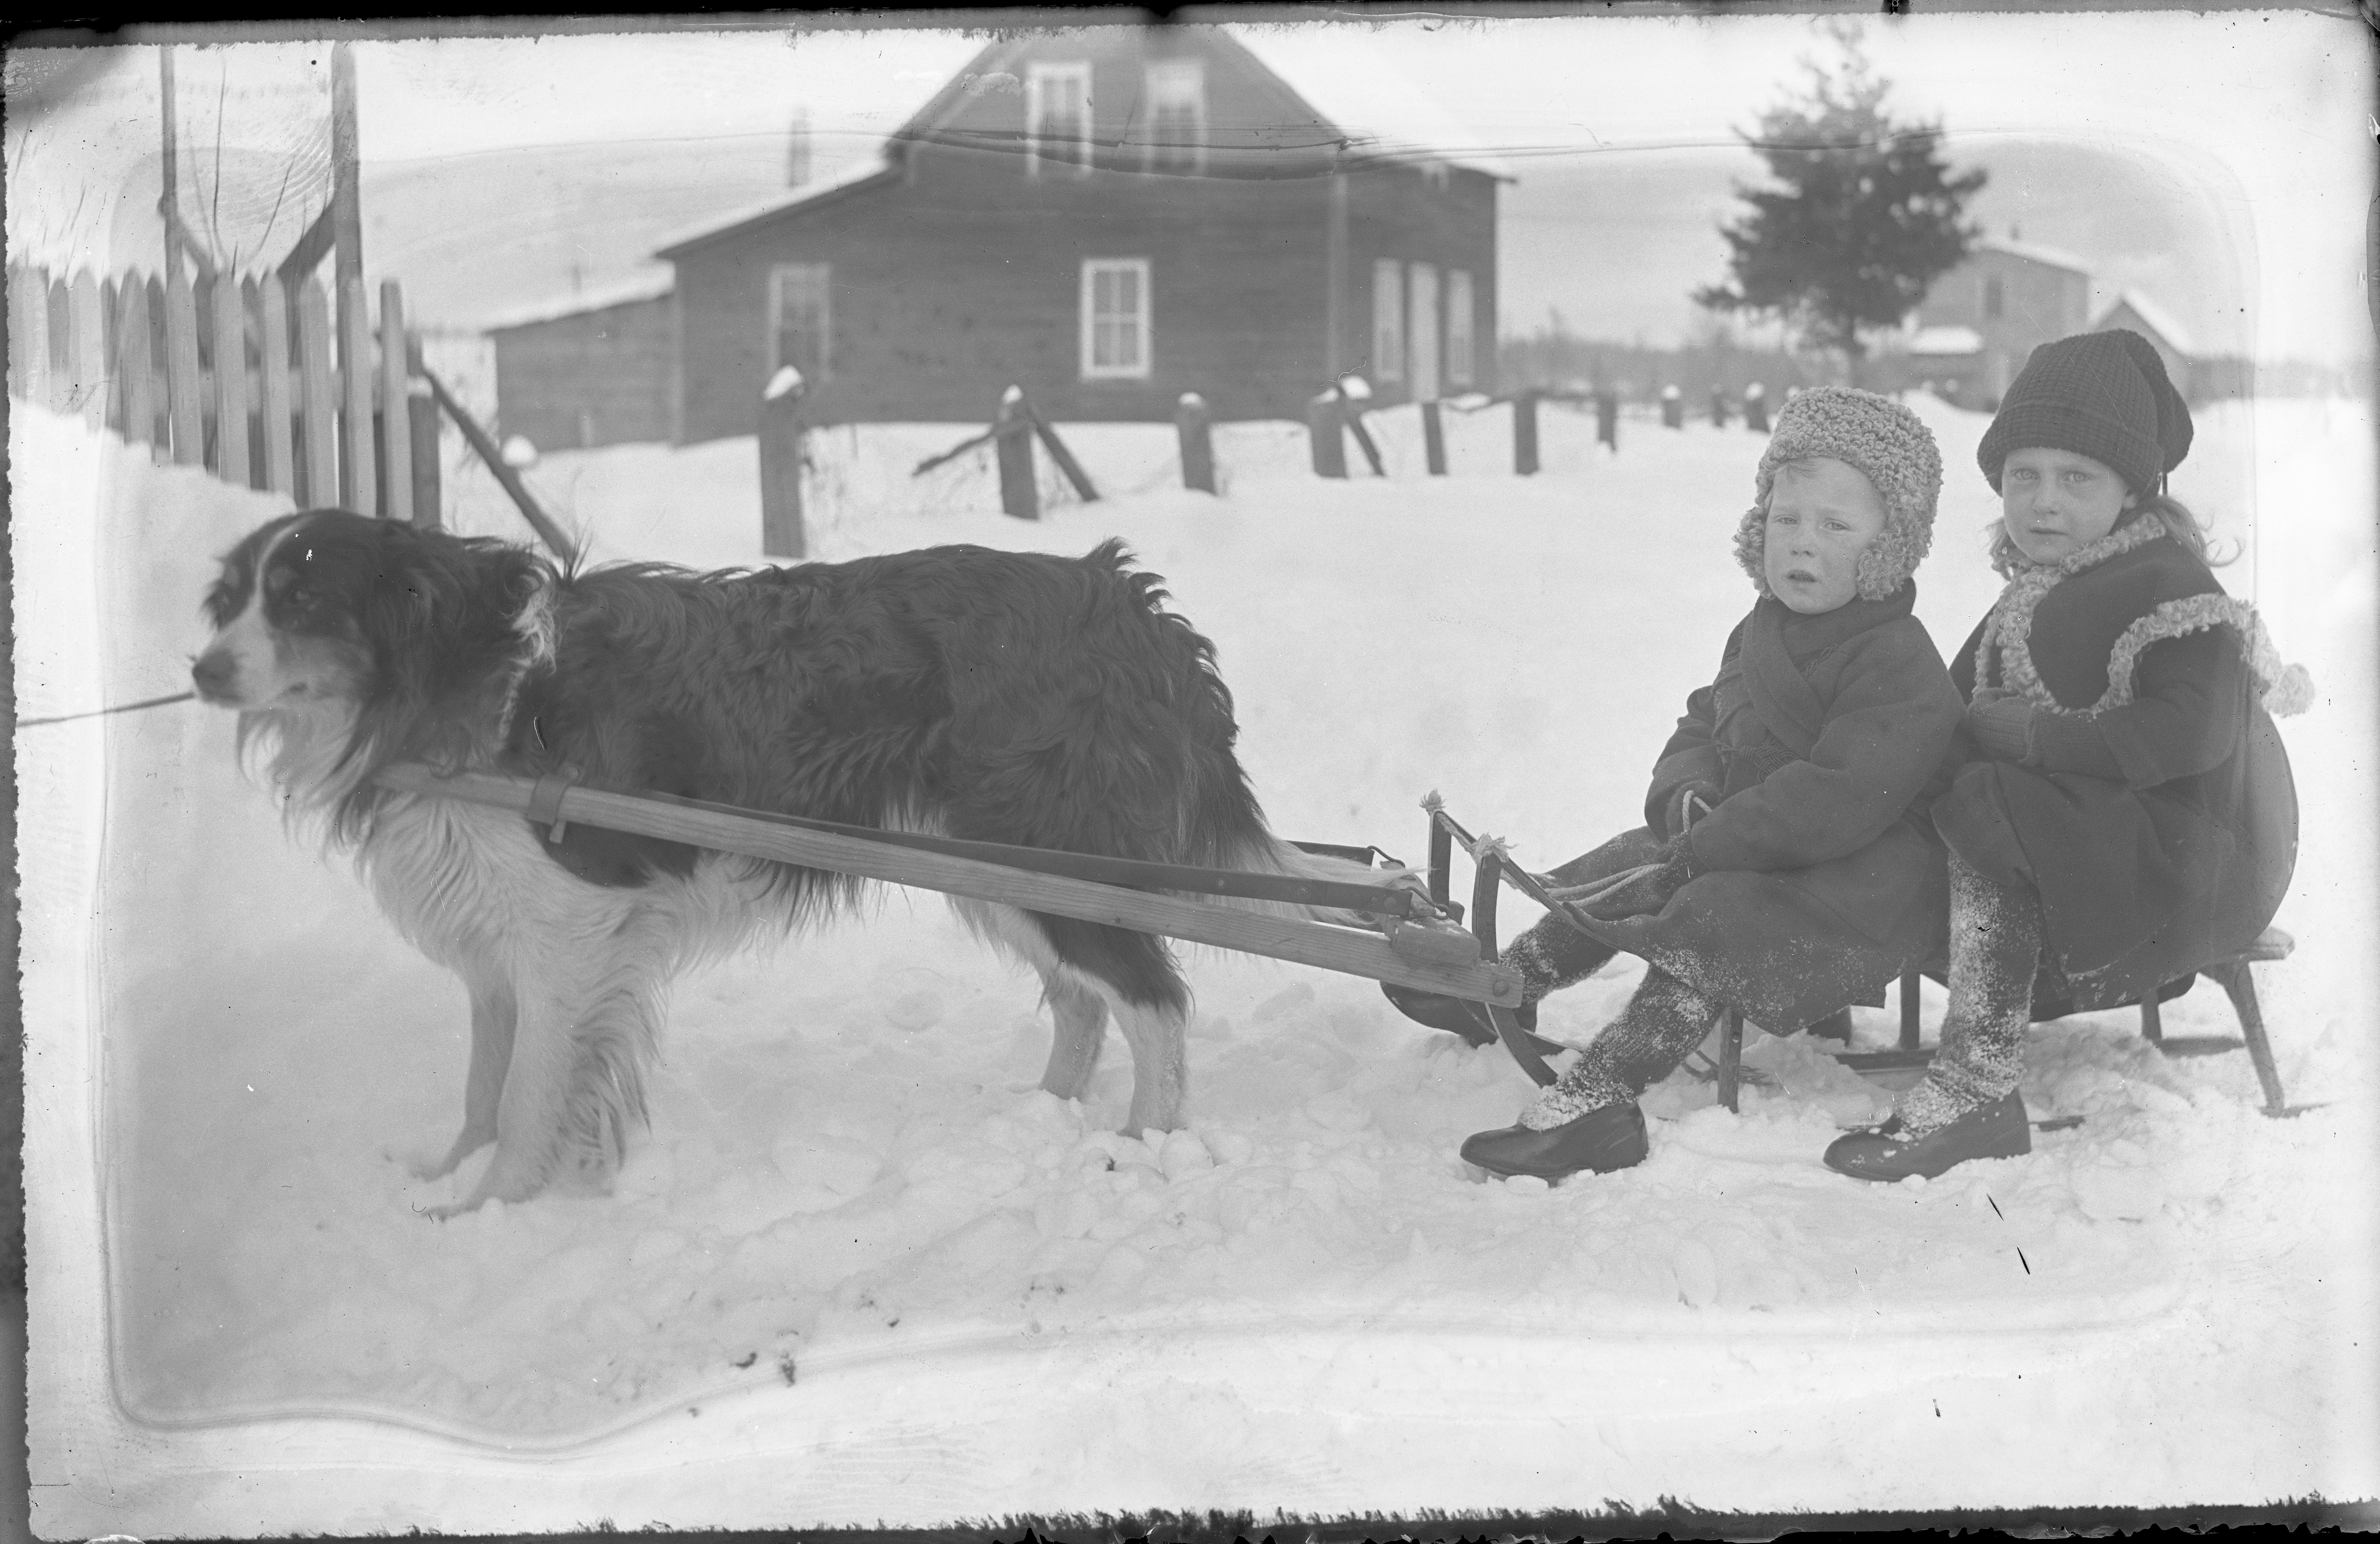 Deux enfants assis sur un traîneau tiré par un chien en hiver. En arrière-plan, une maison enneigée. 